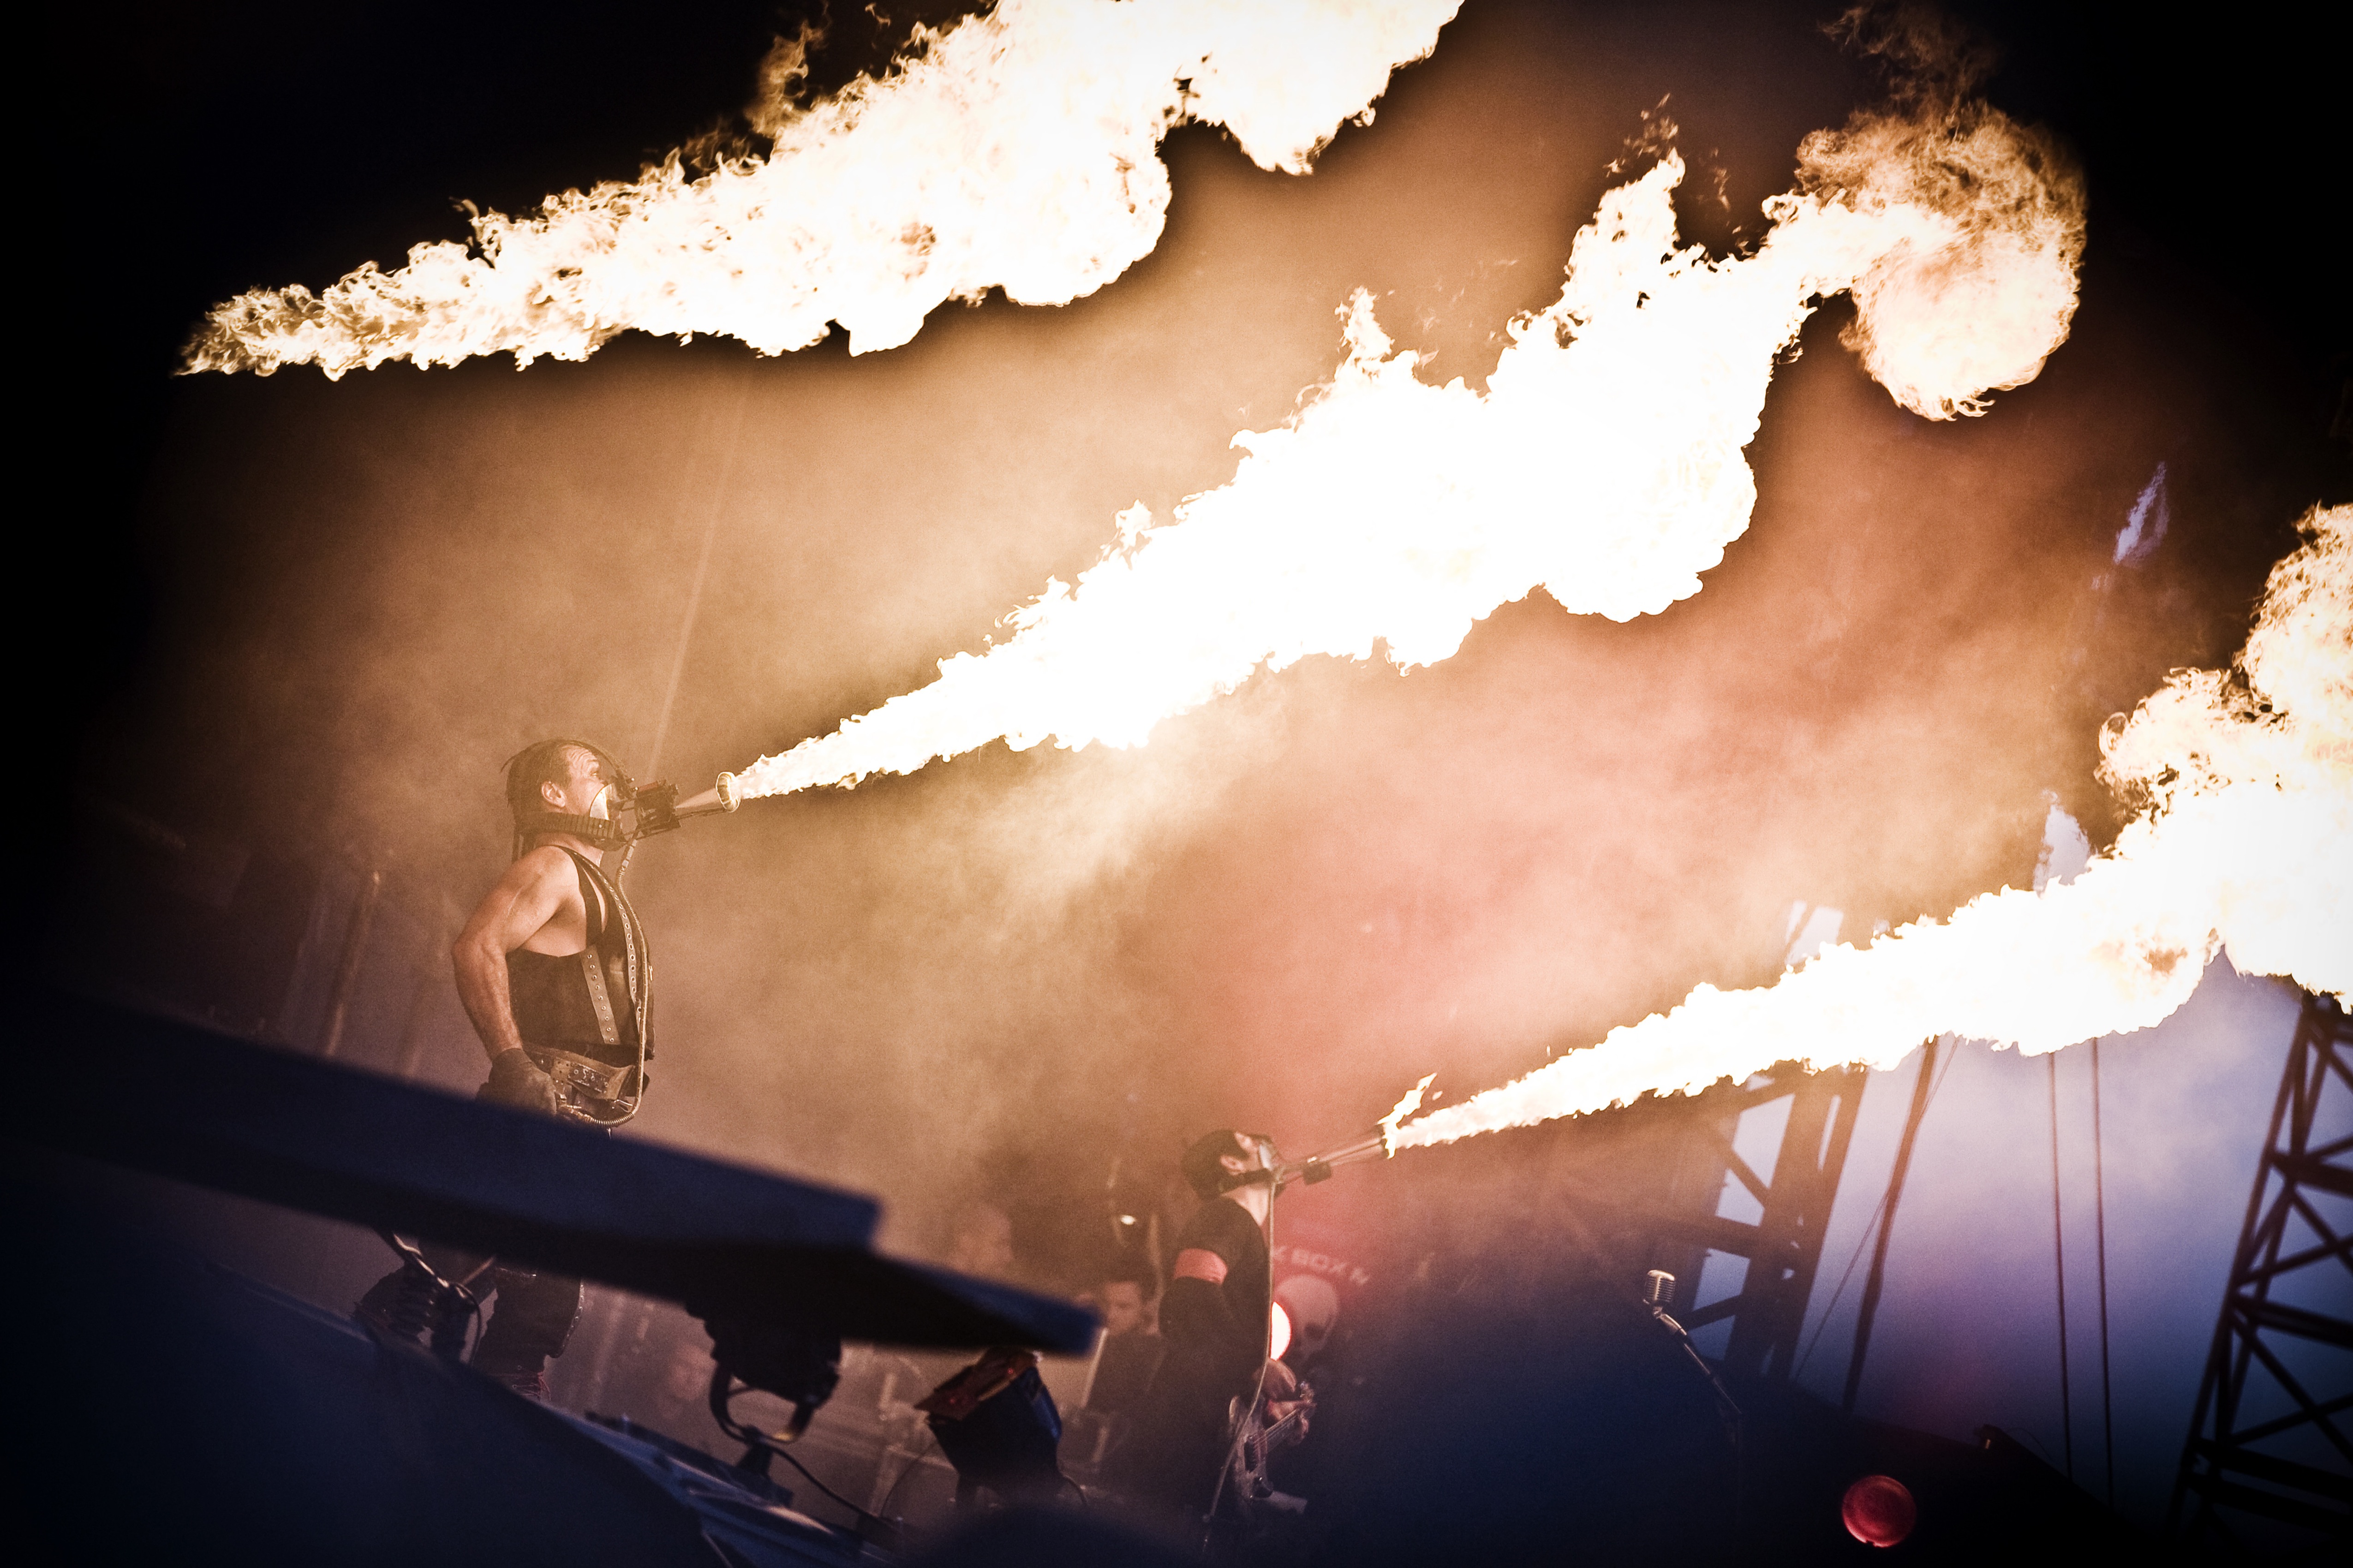 Die deutsche Rockband ist bekannt für den Einsatz von Pyrotechnik bei ihren Konzerten